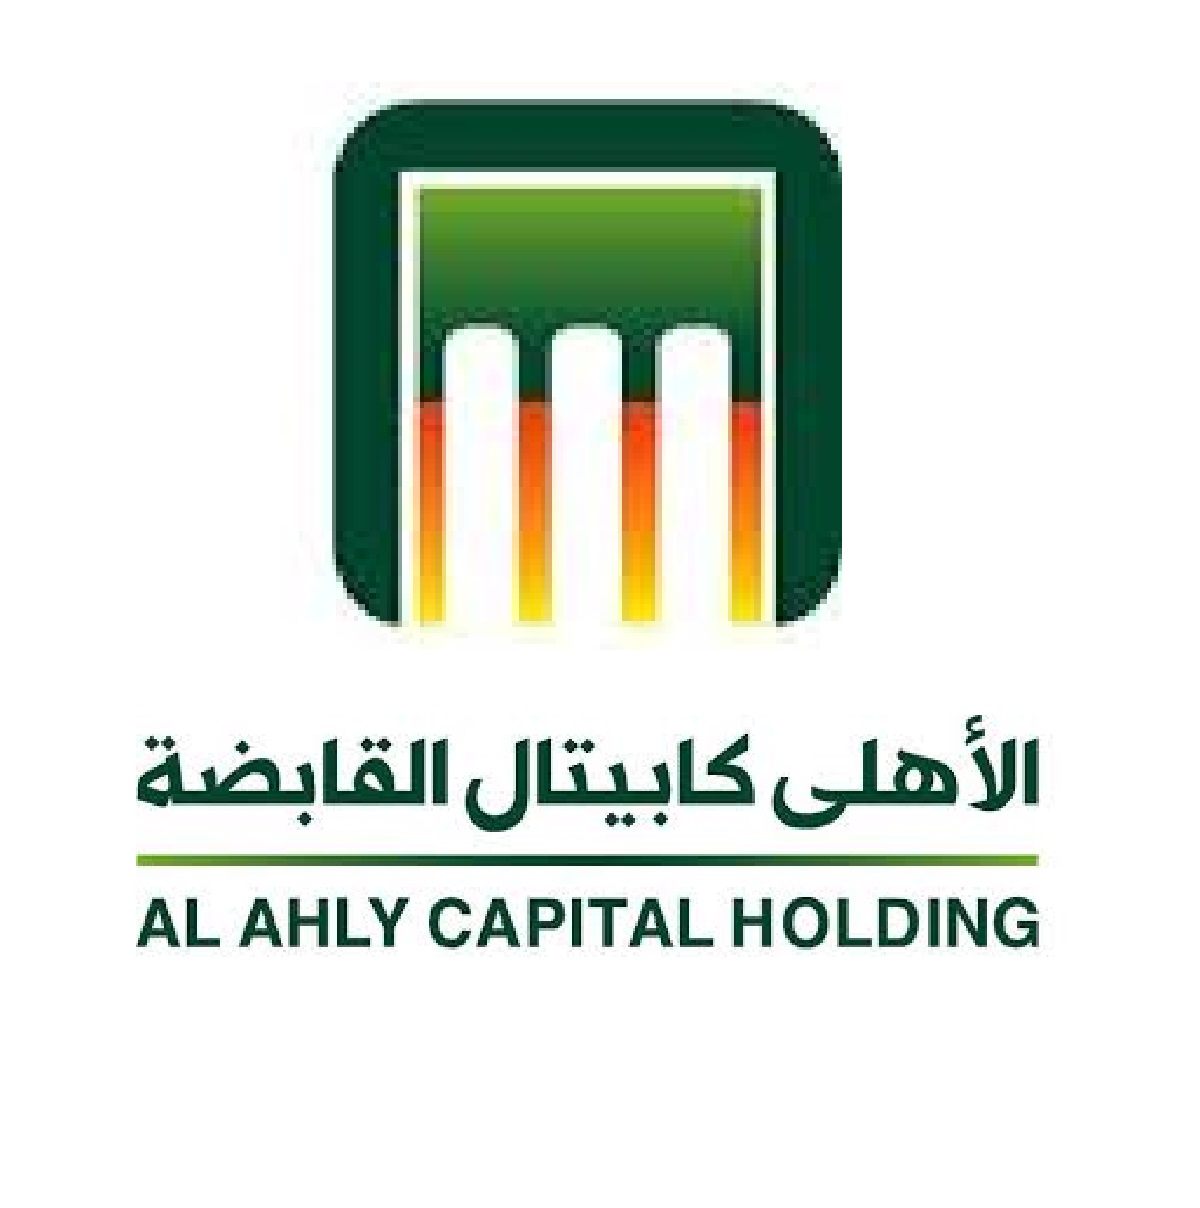 Al Ahly capital